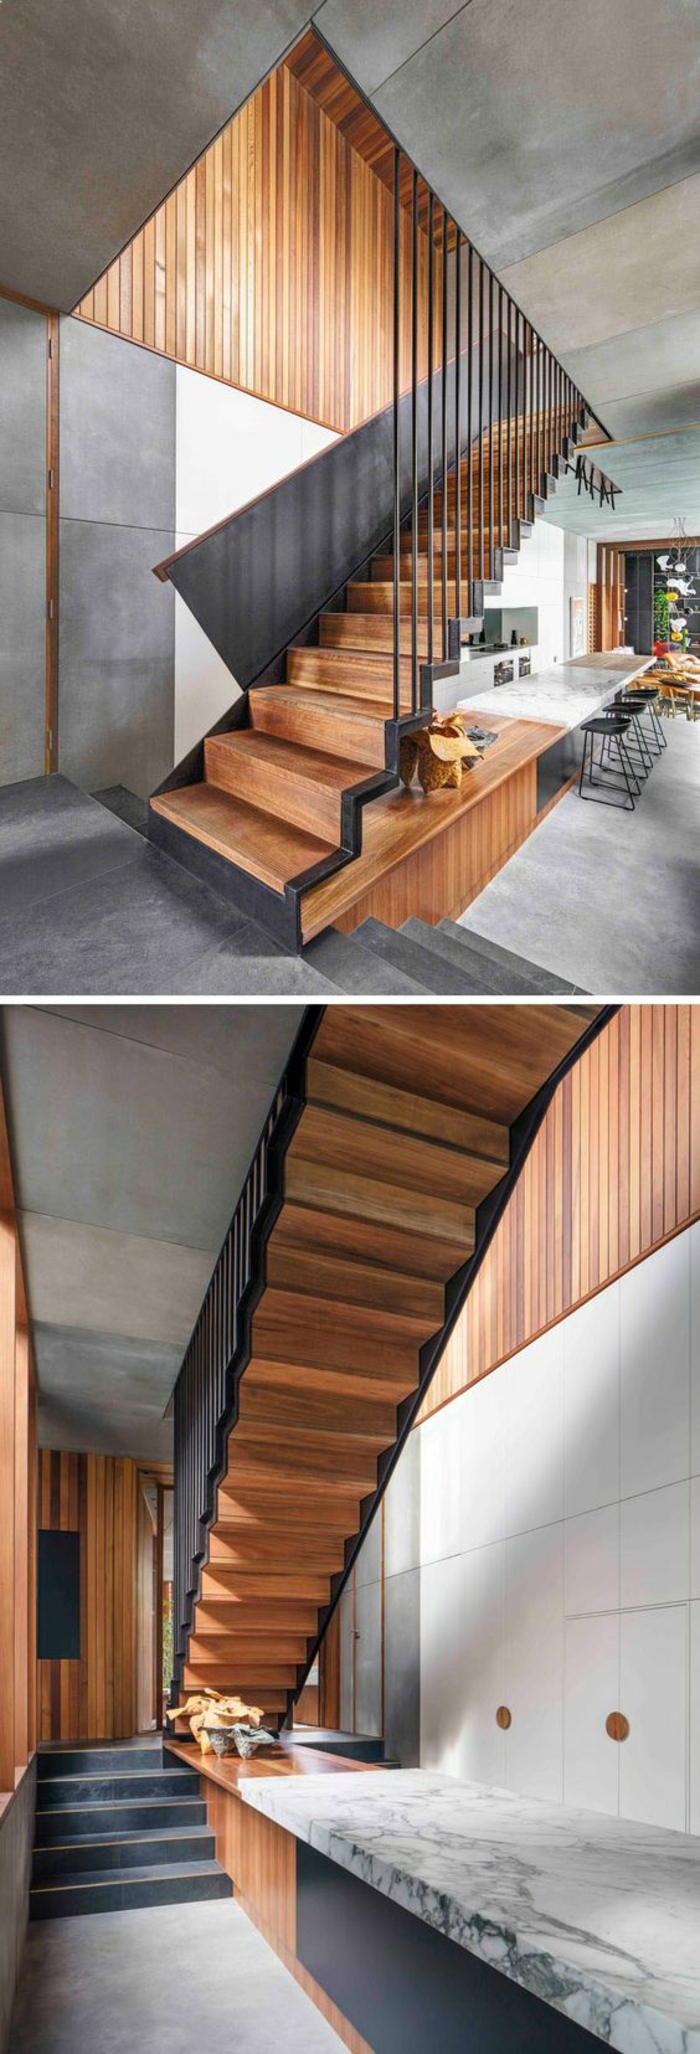 escalier moderne, escalier bois, en couleur chaude avec parties en métal noir, escalier sans limon central, escalier interieur 